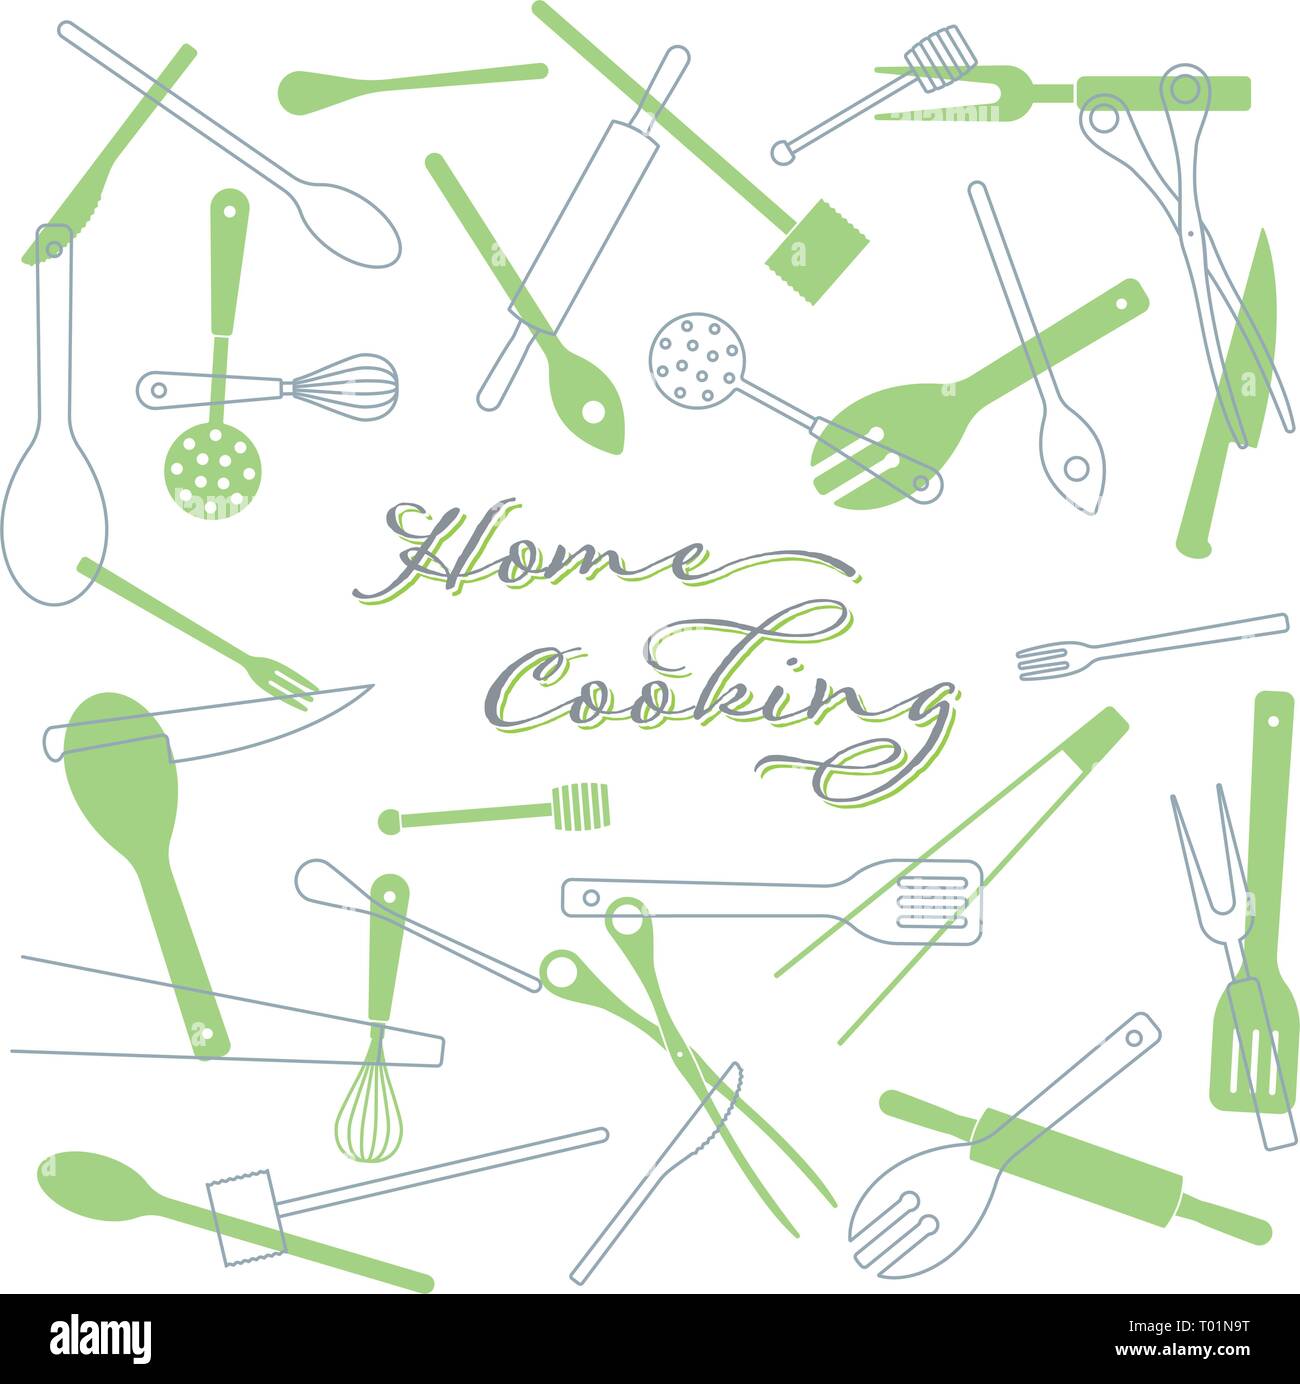 Home Kochen Konzept Hintergrund. Küchengeräte Vector Illustration. Text auf separaten Layer. Stock Vektor